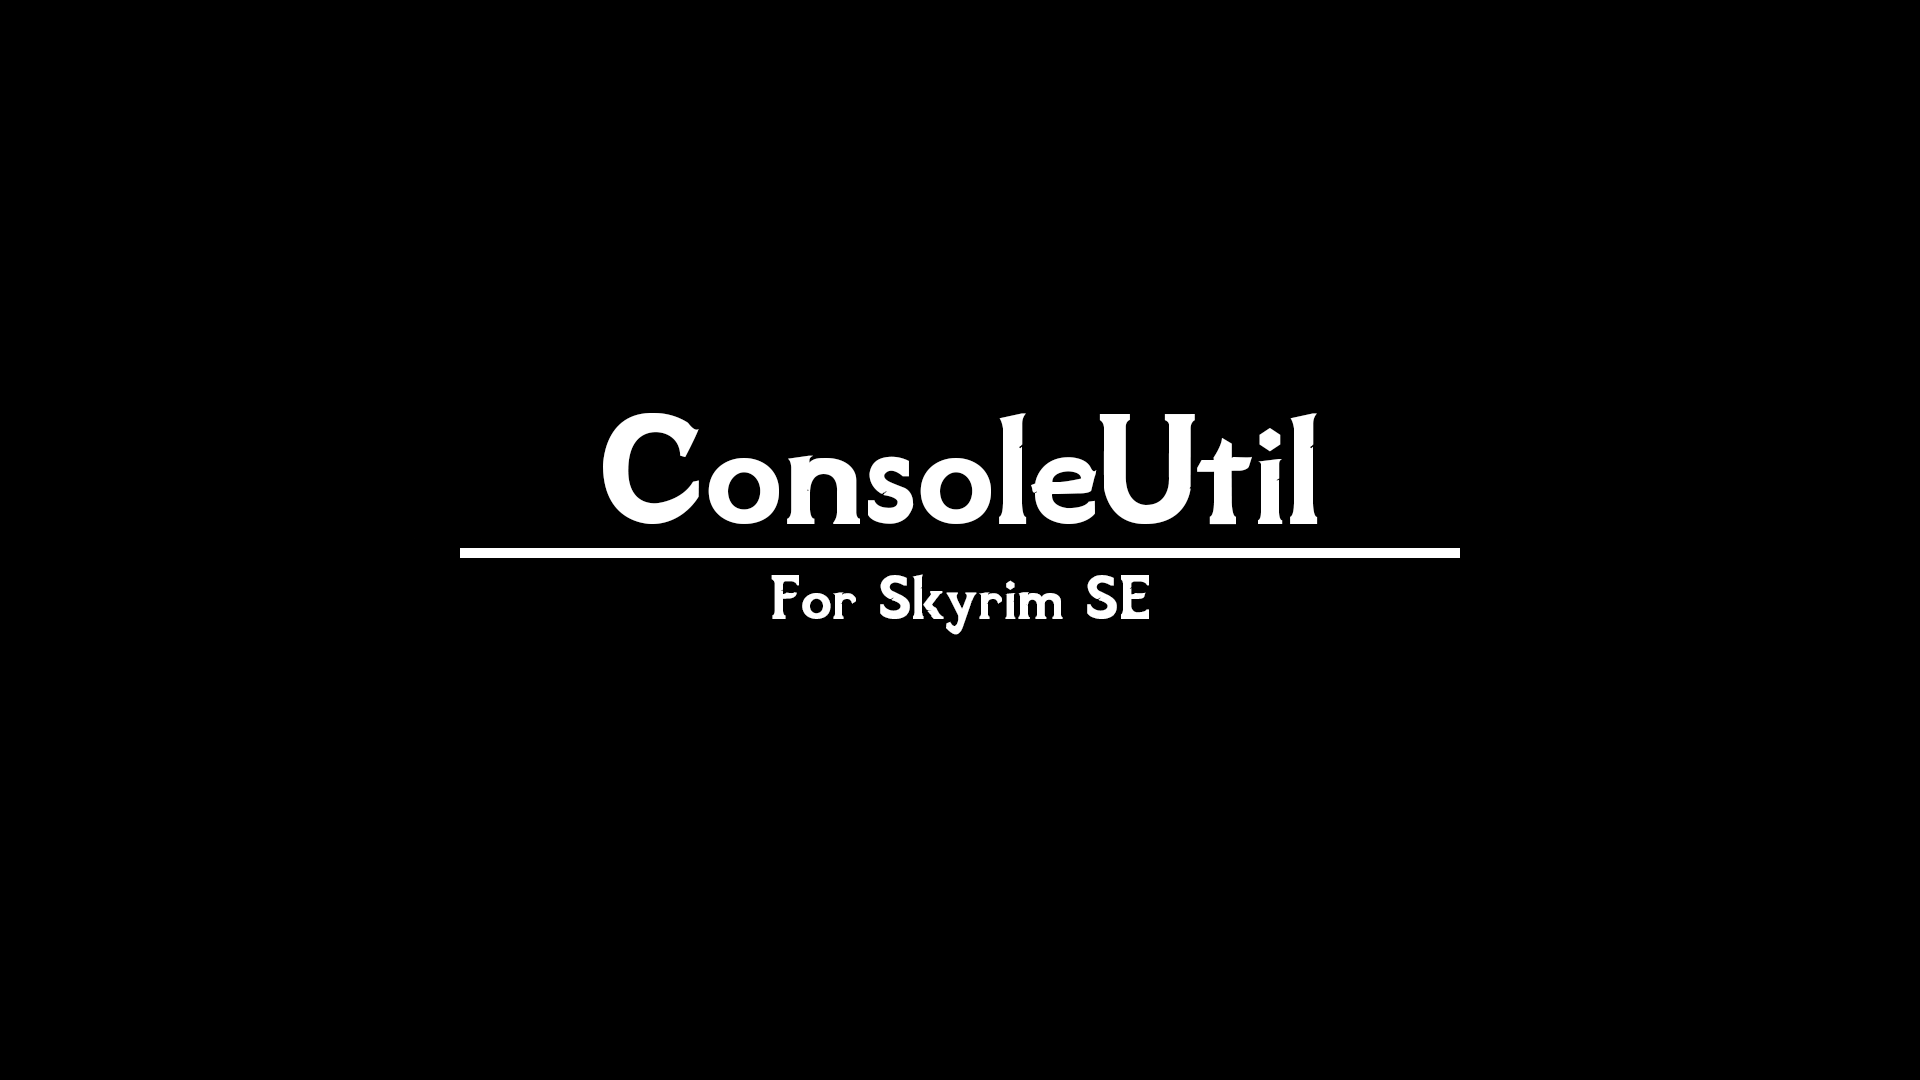 Consoleutilsse ユーティリティ Skyrim Special Edition Mod データベース Mod紹介 まとめサイト